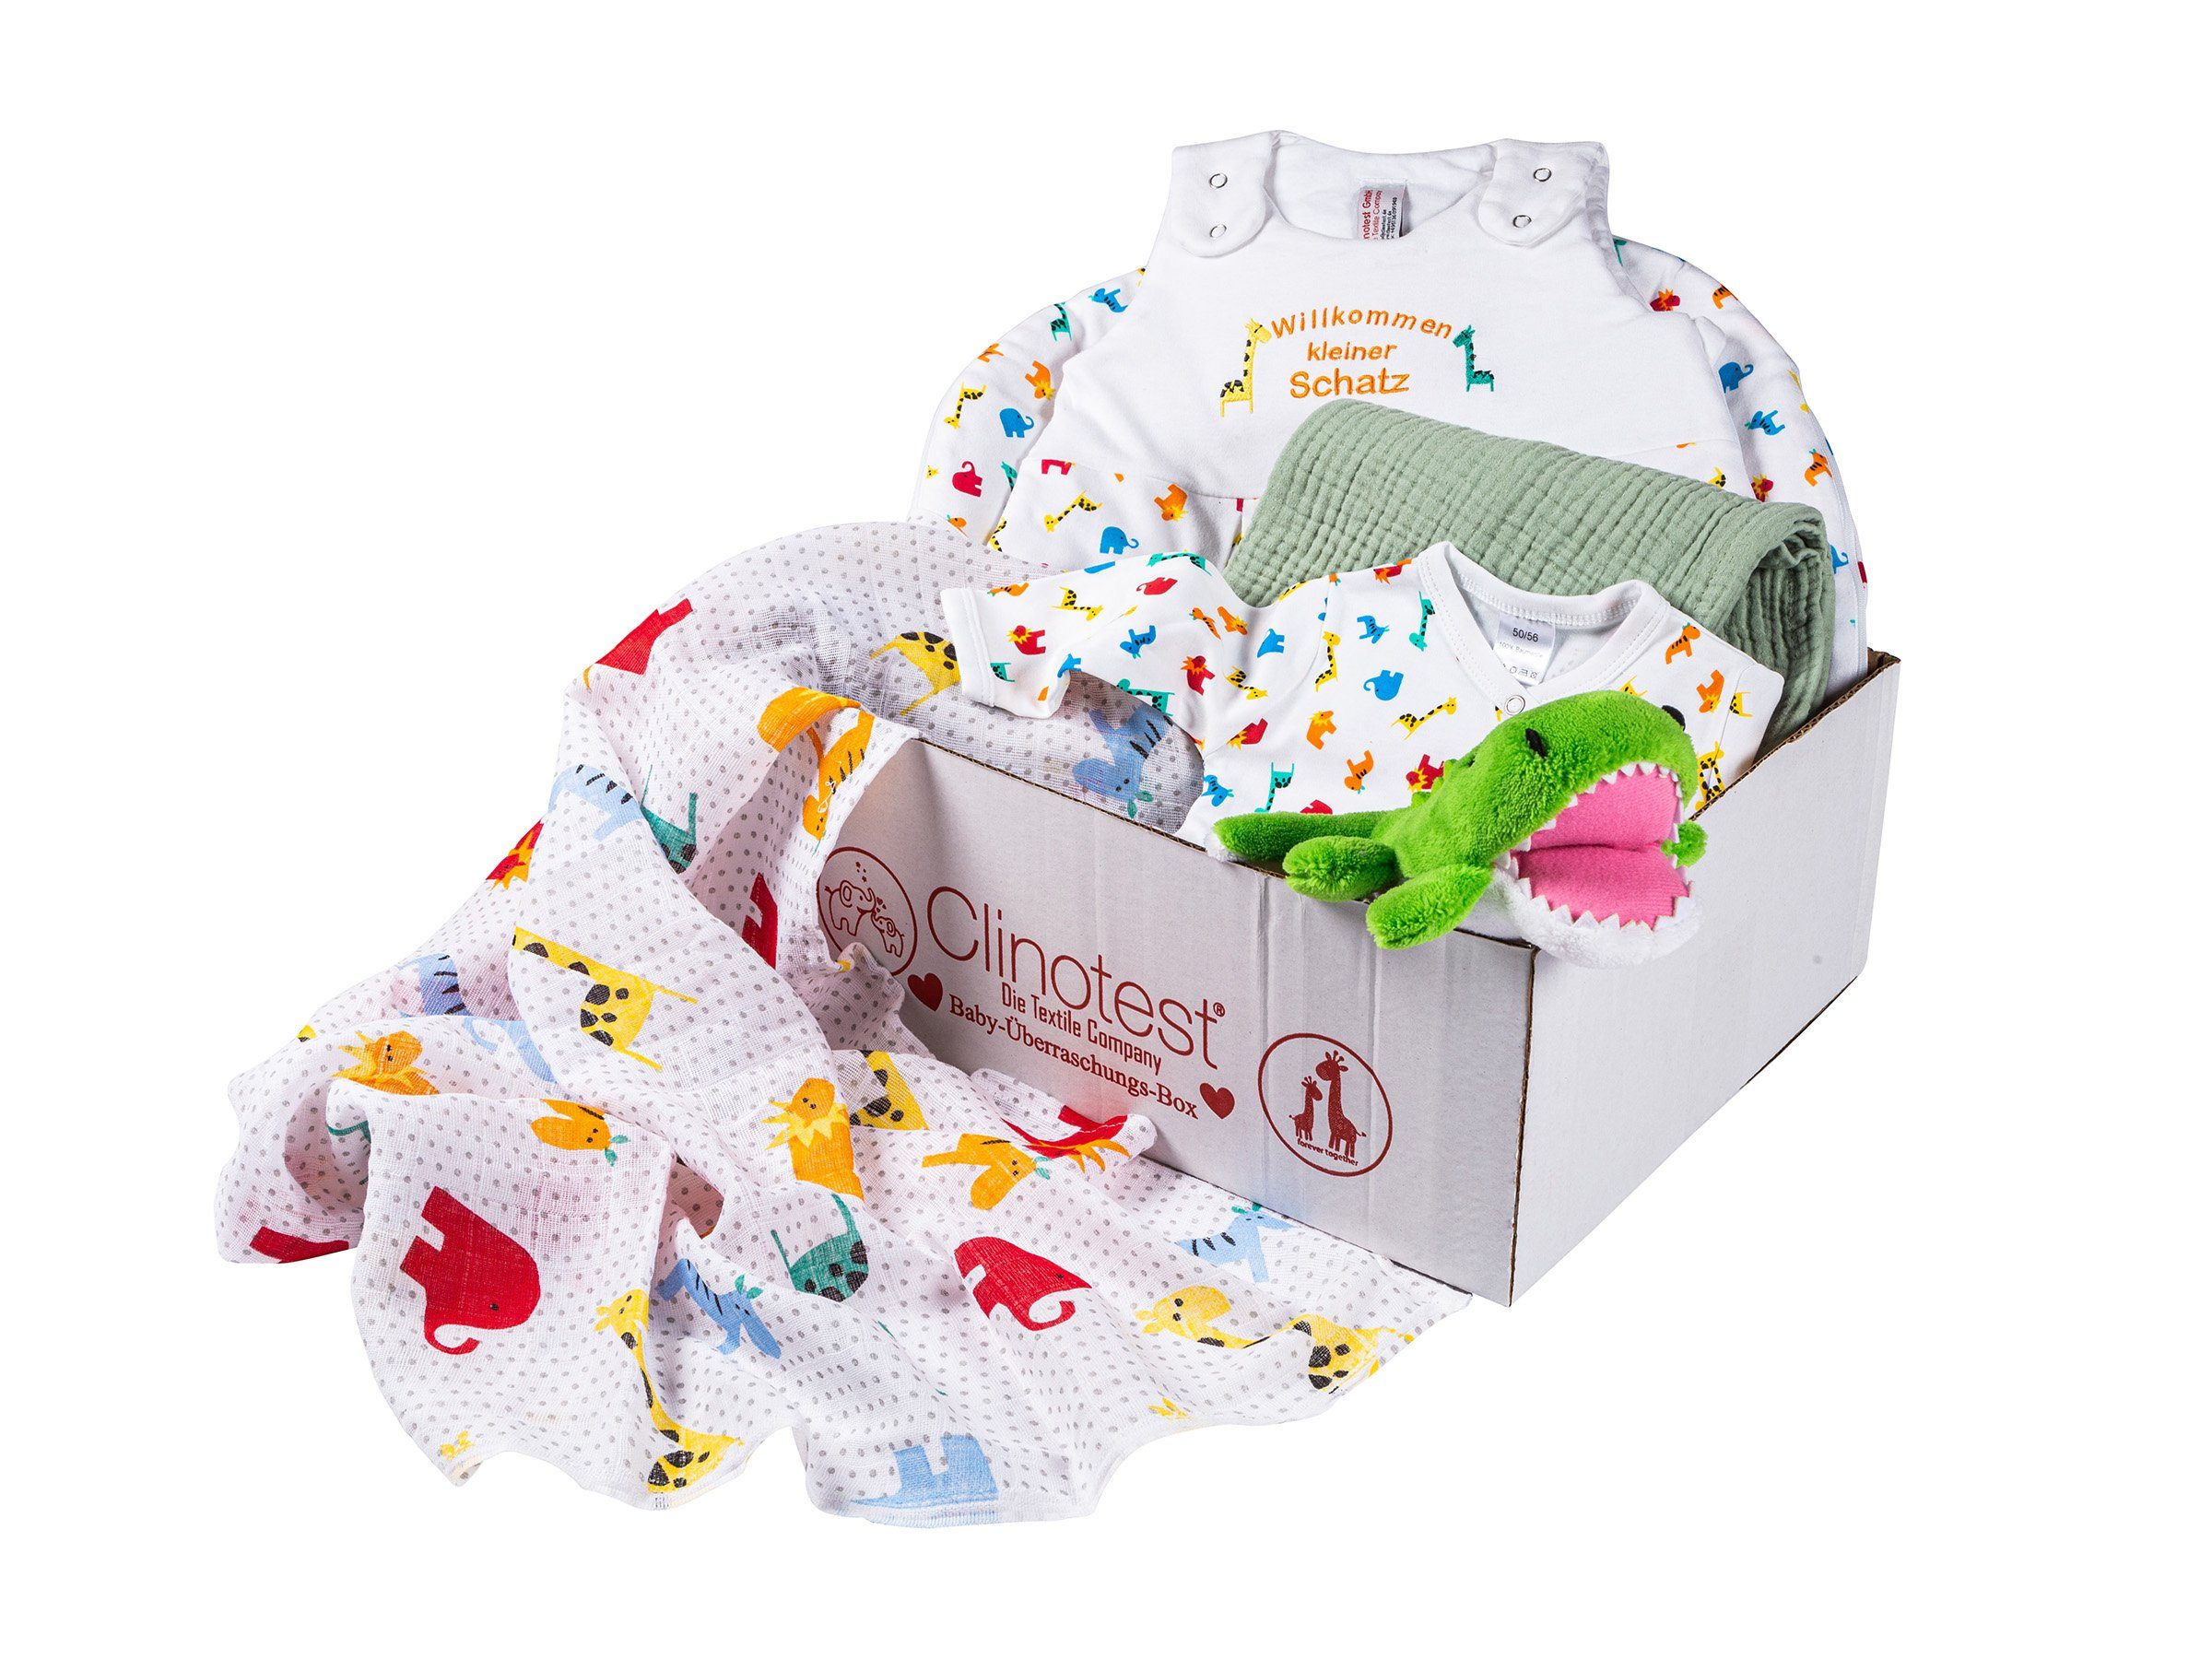 Clinotest Neugeborenen-Geschenkset Baby-Überraschungsbox, Bekleidungs-Set, verschiedene Boxeninhalte Schilf